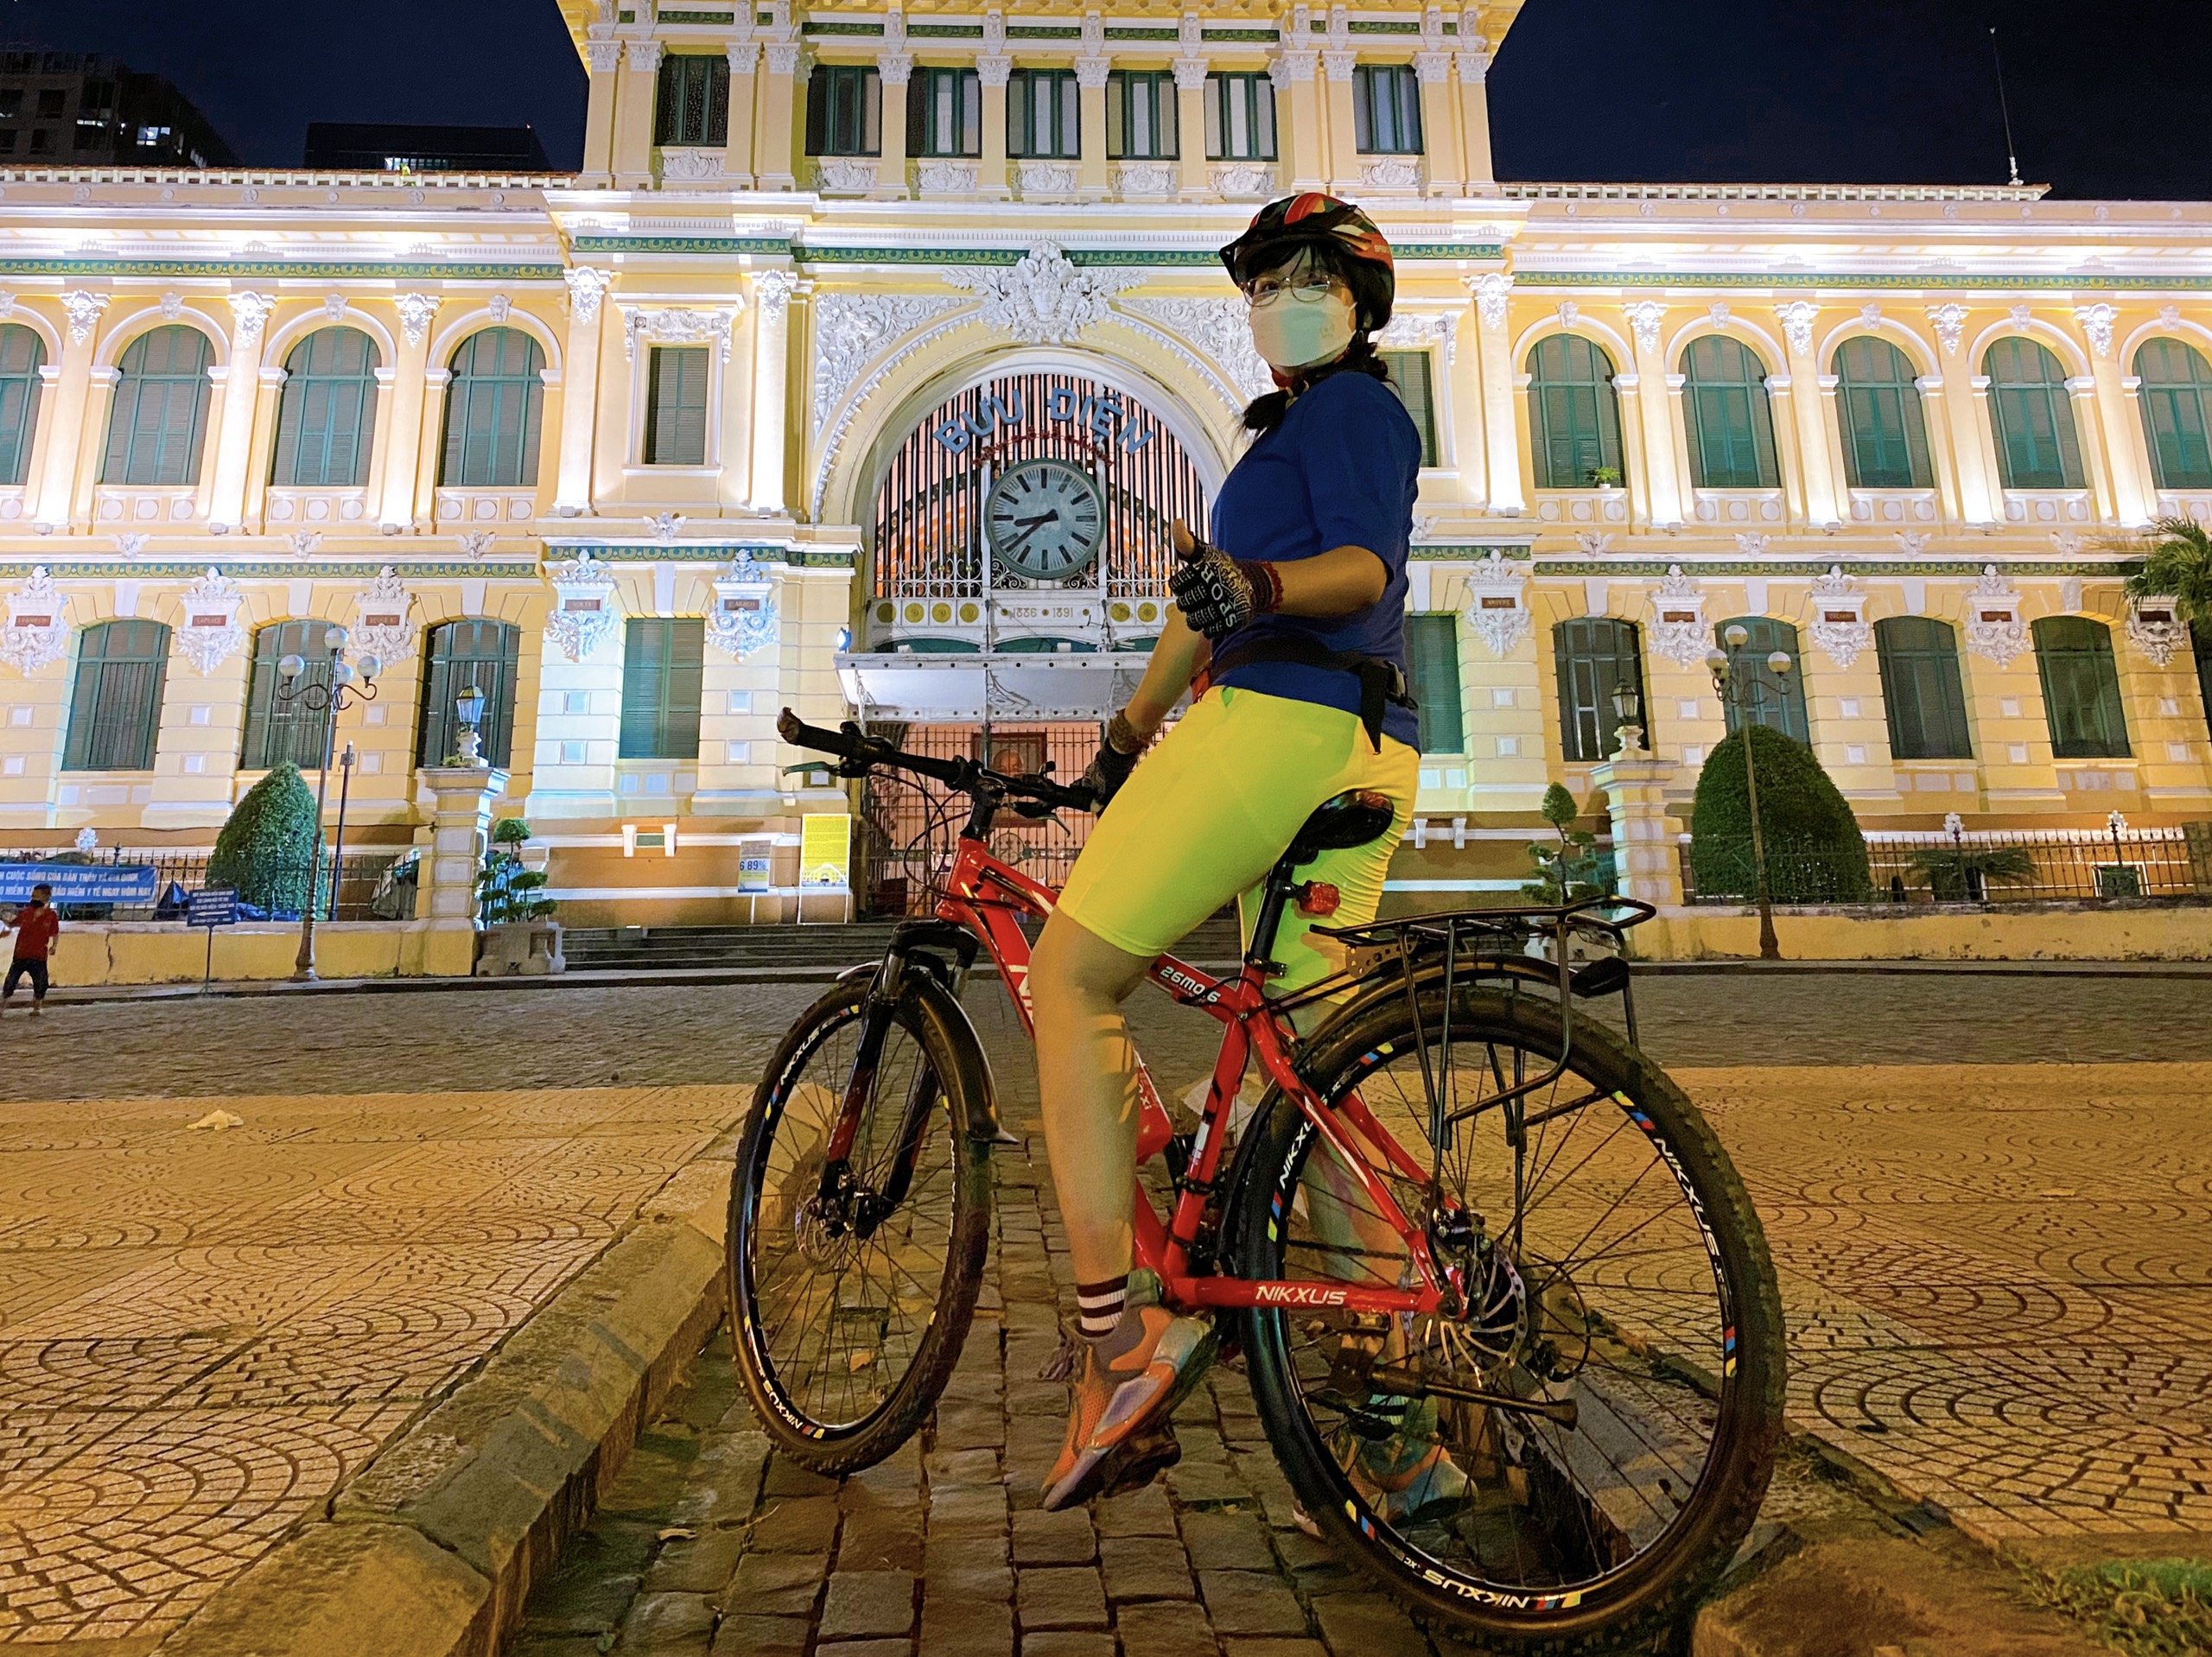 Giá xăng liên tục tăng, cô gái đạp xe hơn 10 km để đi làm